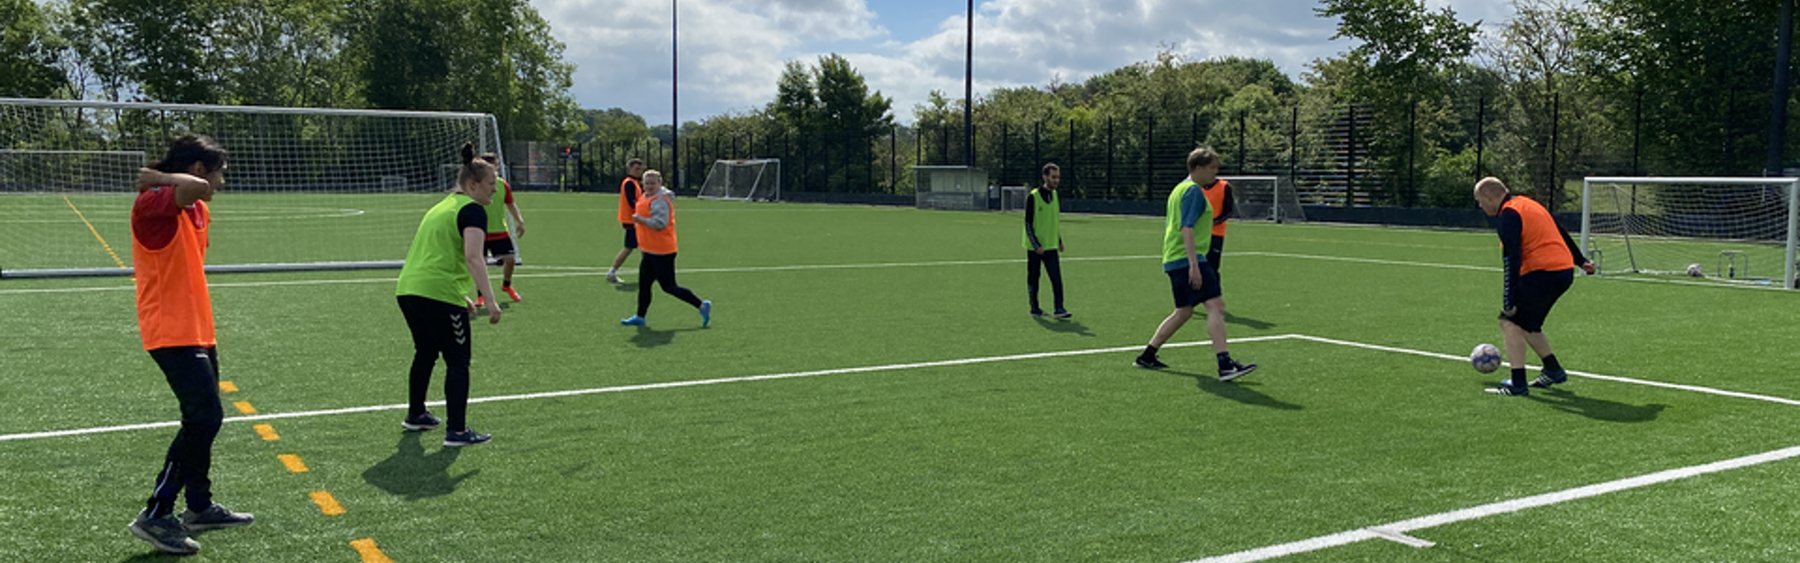 I Roskilde Kommune er fodbold et tilbud til unge ledige